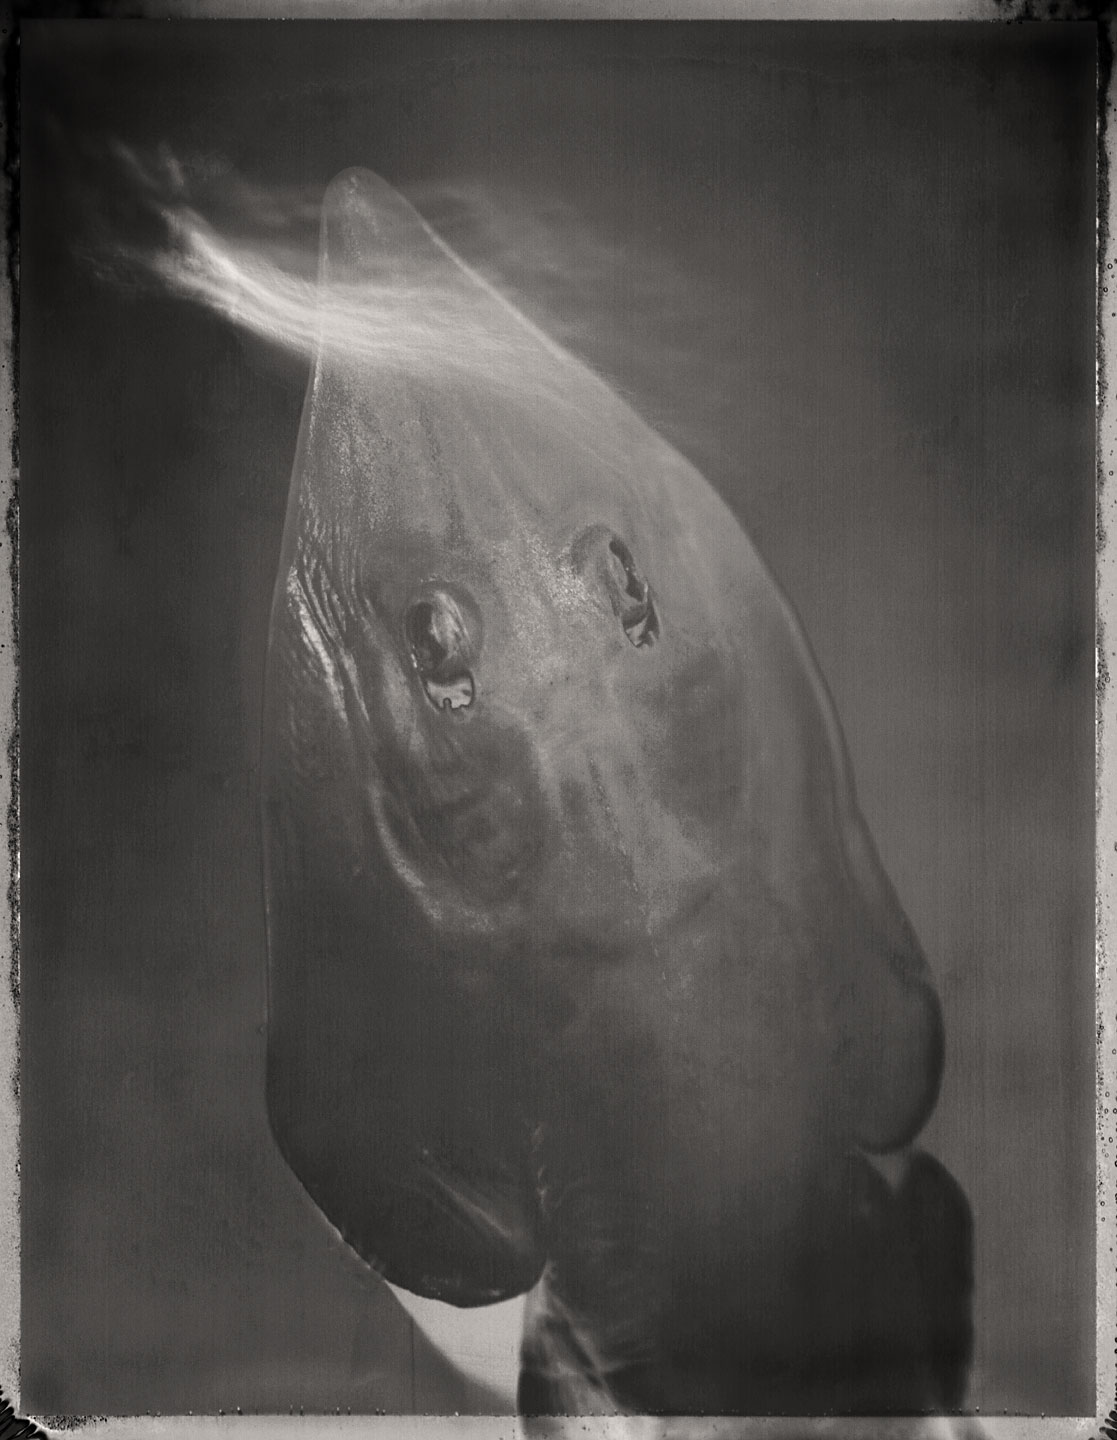 Guitarfish, Rhinobatidae